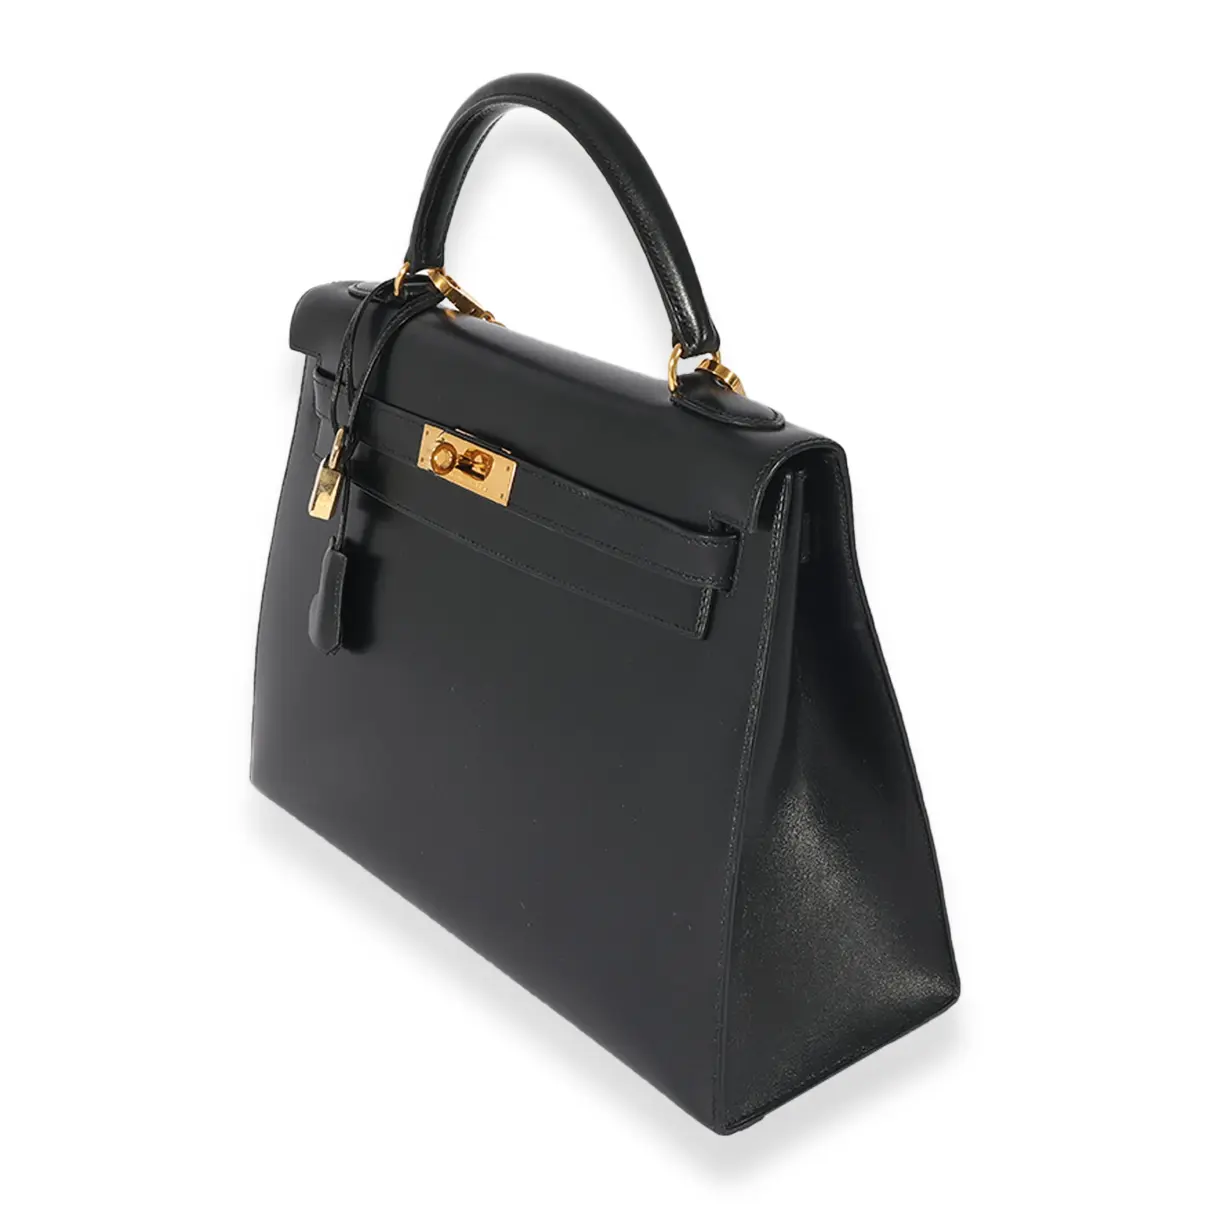 Buy Hermès Leather handbag online - Vintage